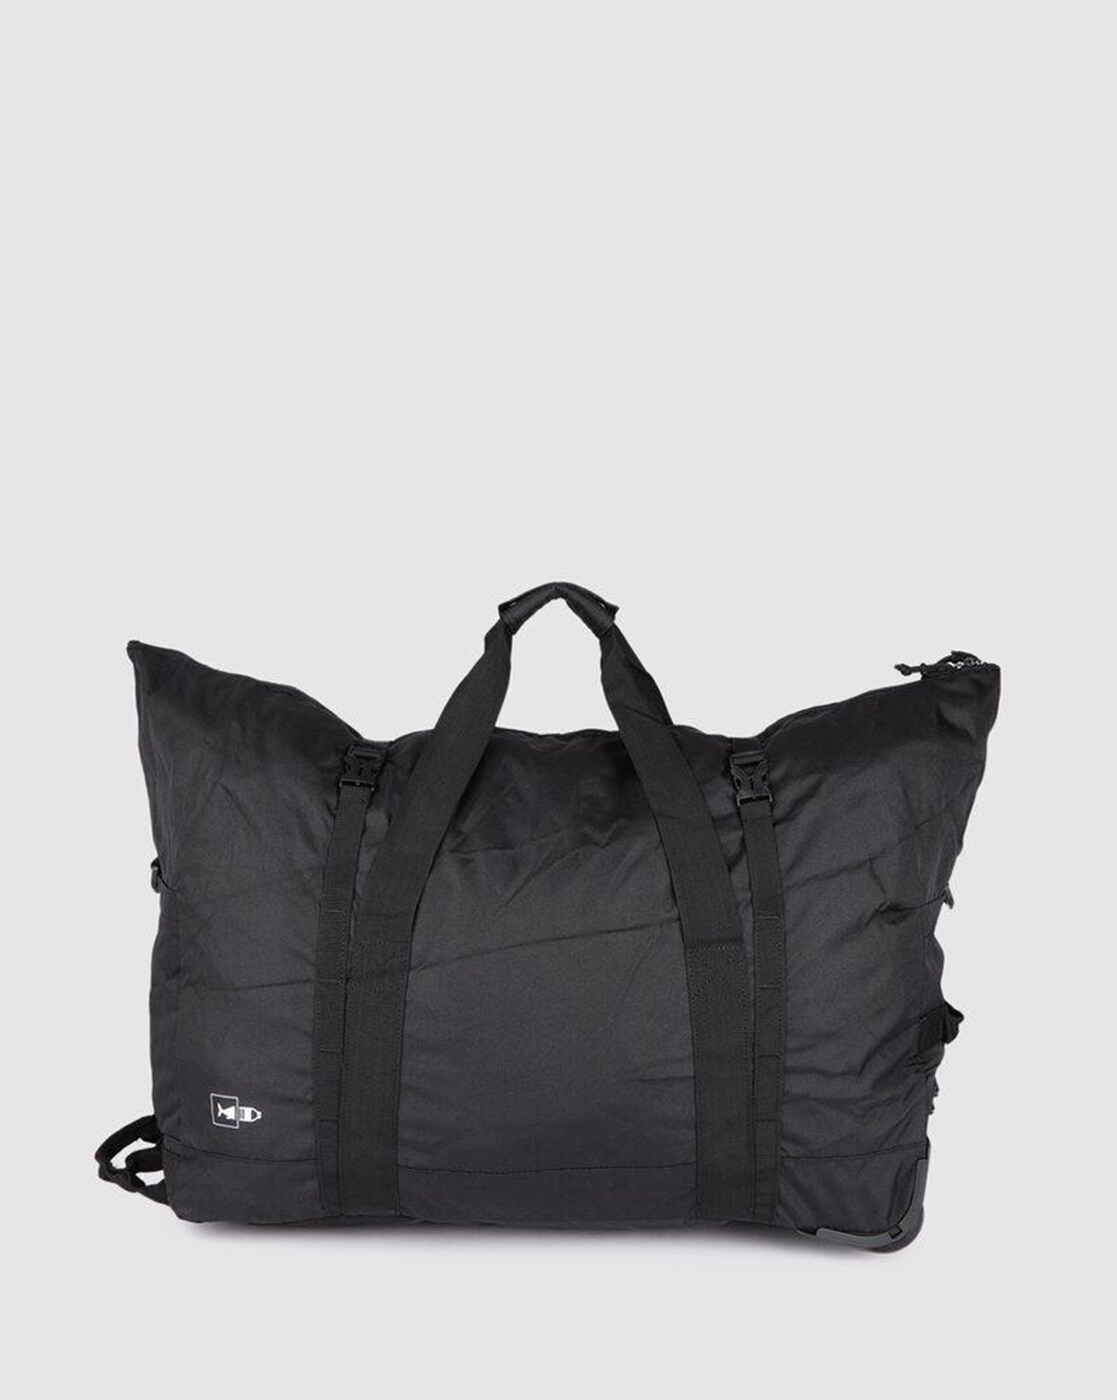 Traveler Duffle Bag - Stansport